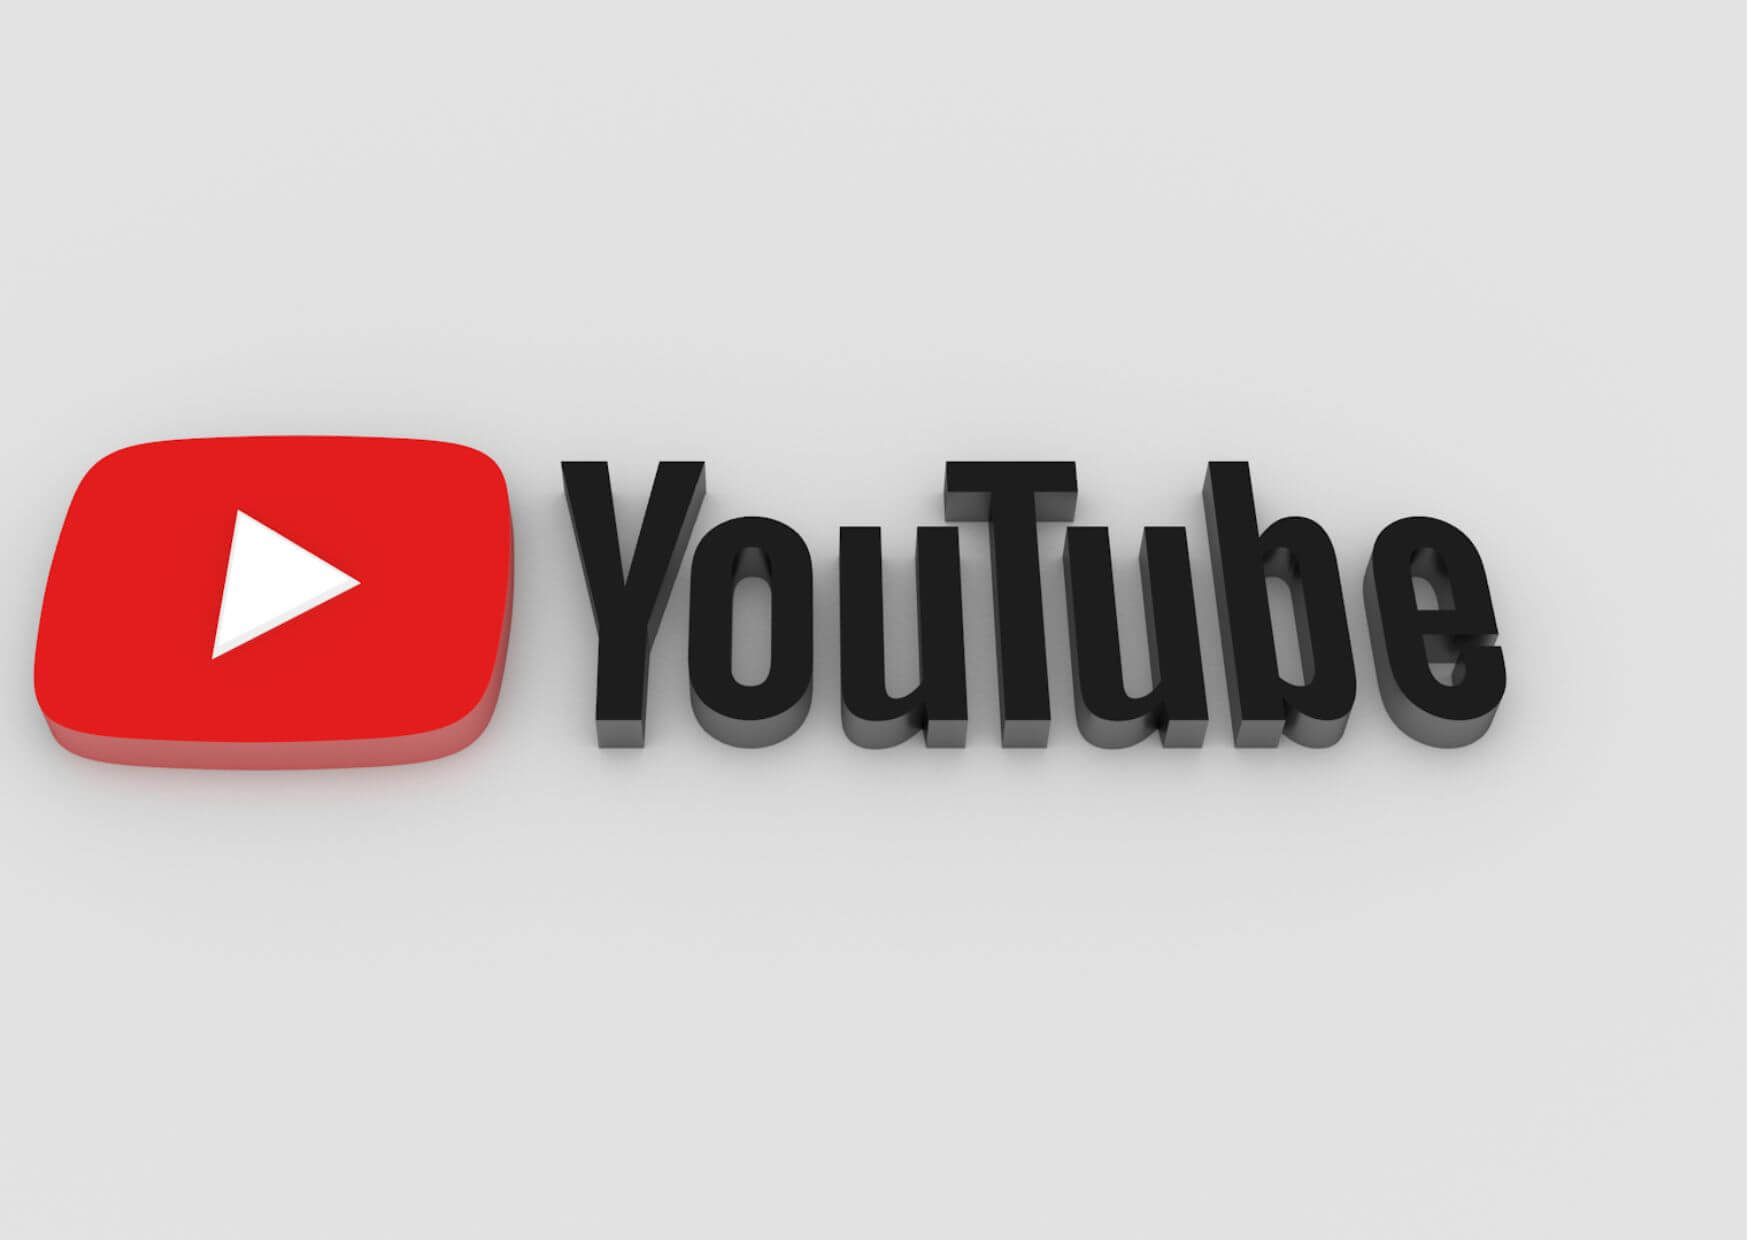 Youtube, eines der grössten Videoportale der Welt